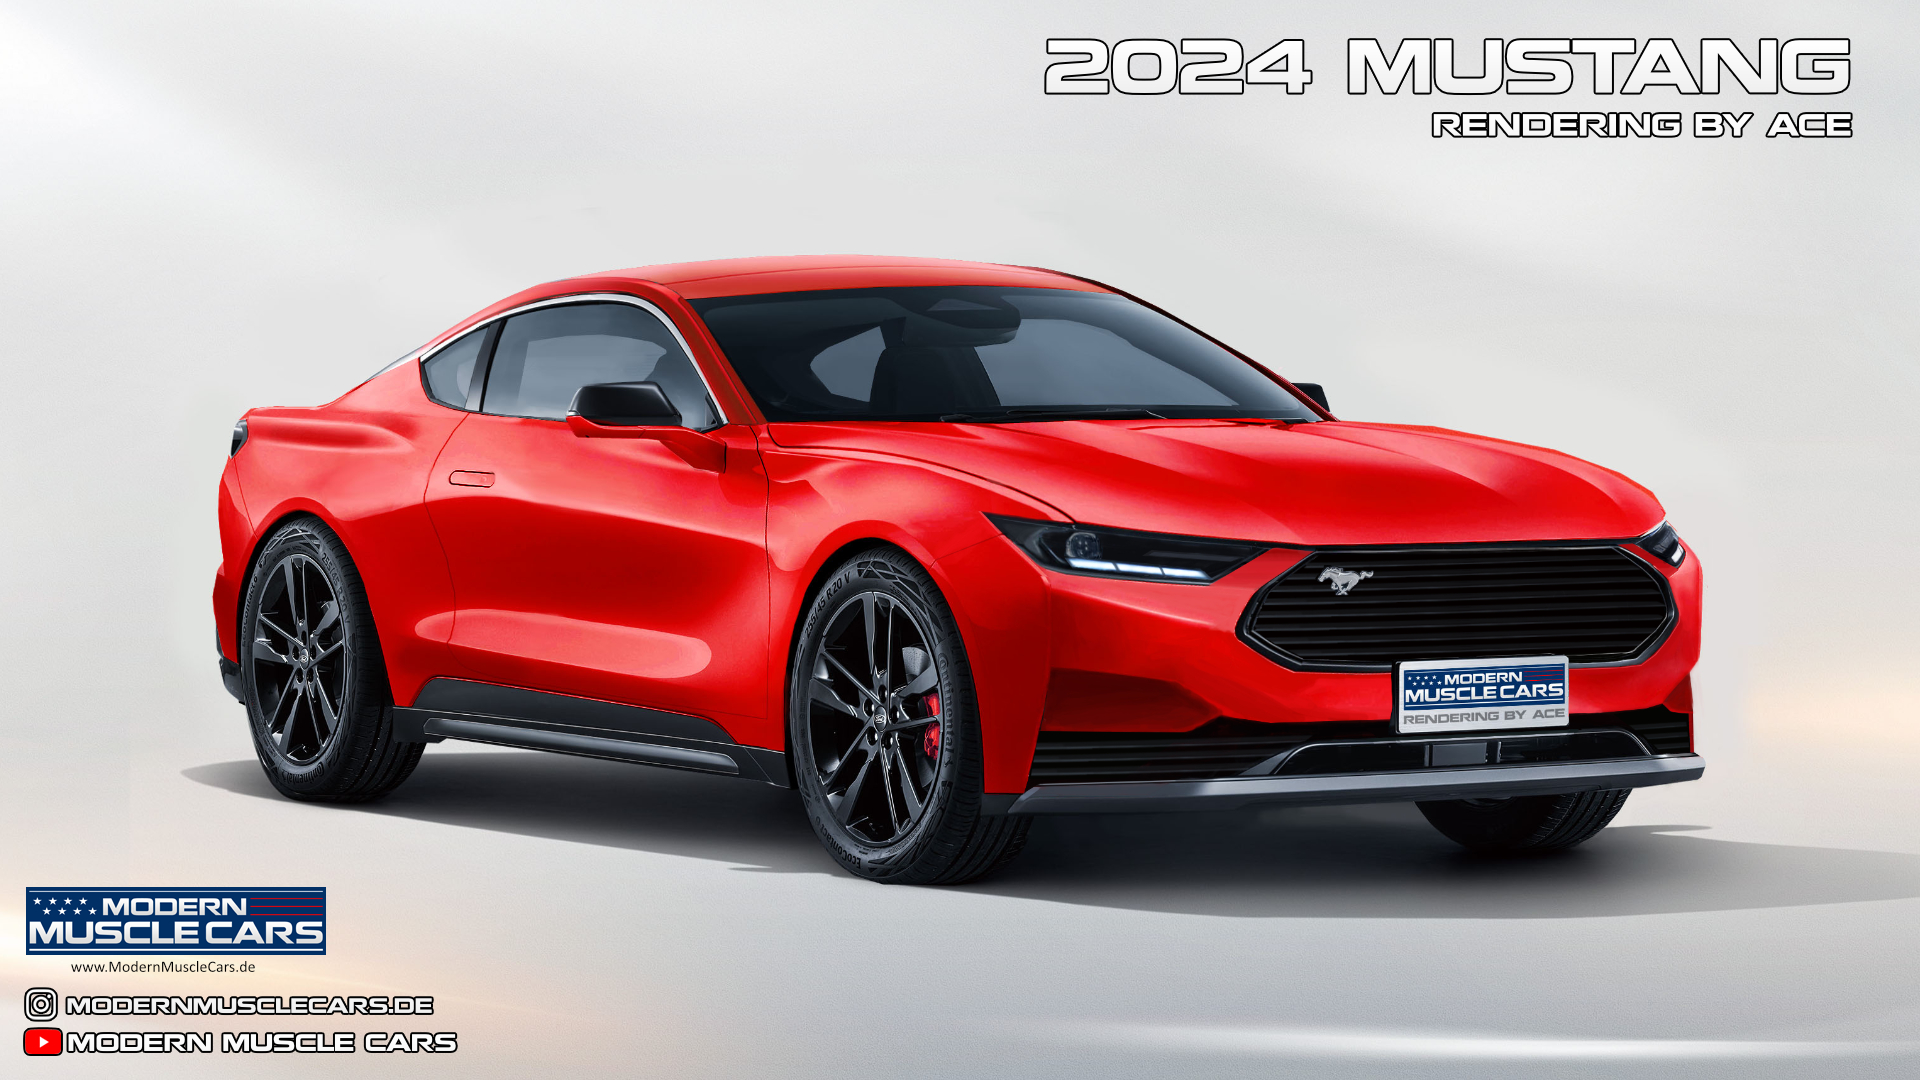 Mustang7_Red_ModernMuscleCars_v3.jpg